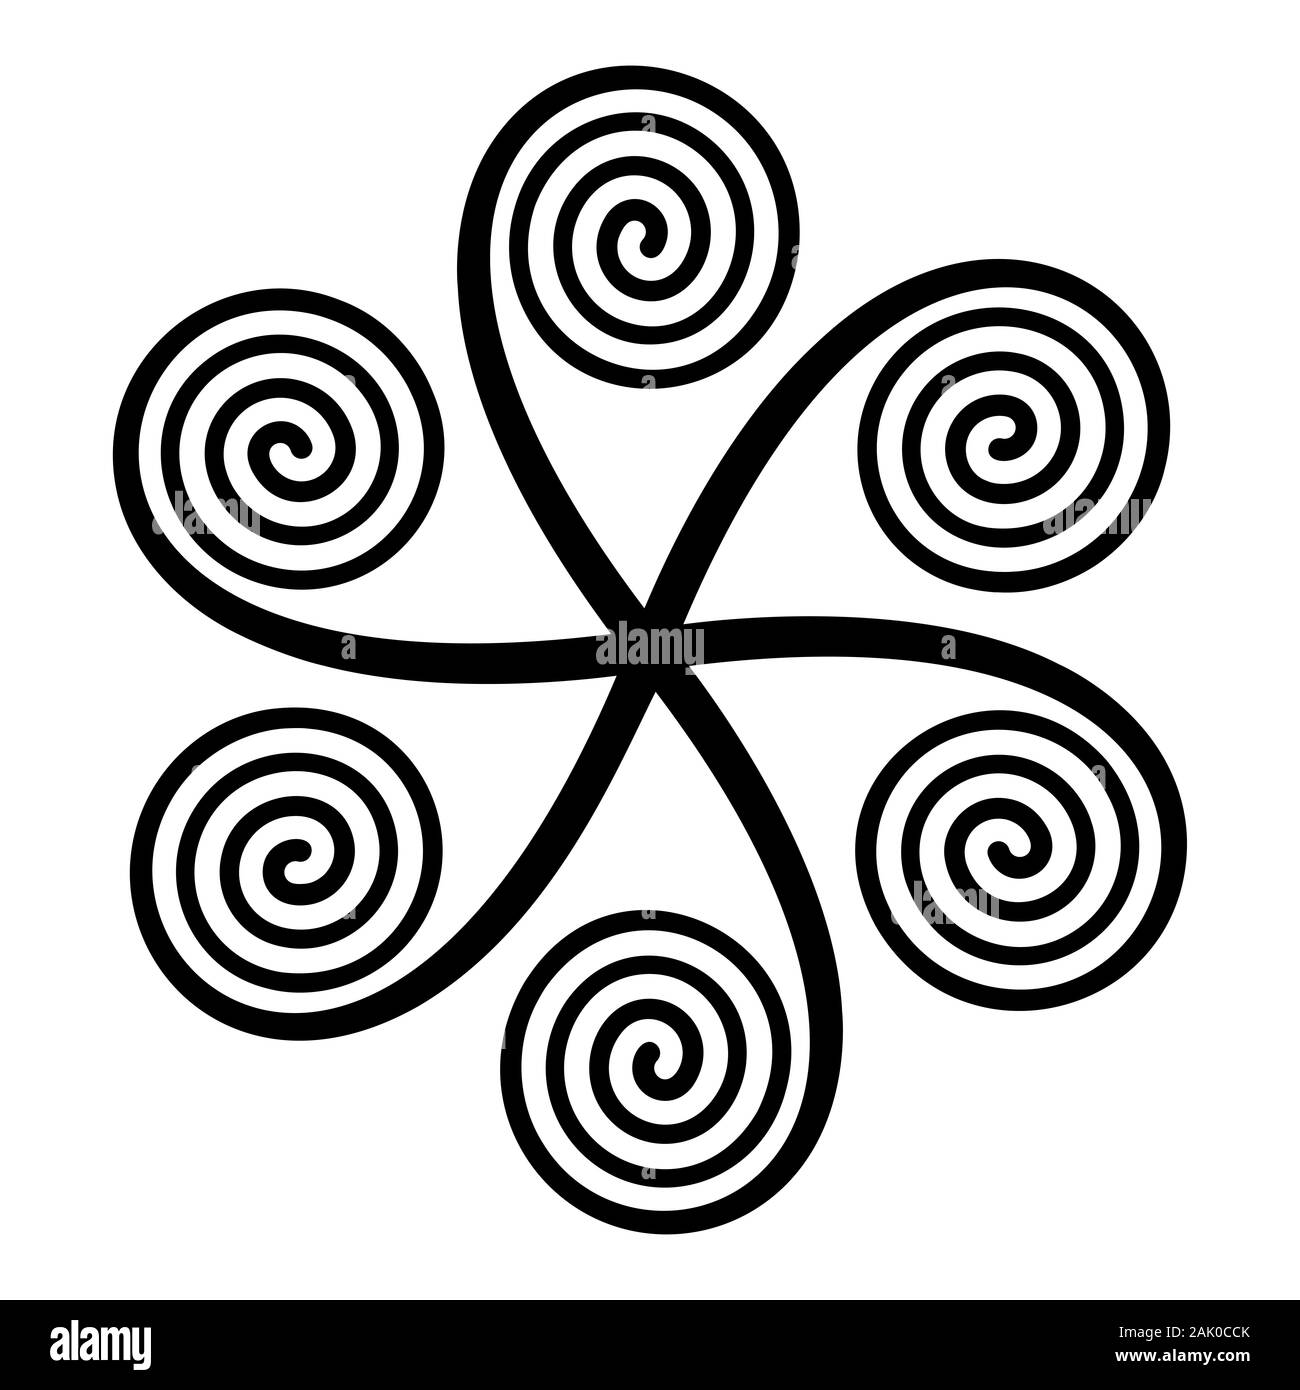 Le symbole en forme d'étoile avec six spirales arithmétique linéaire, fait de spirales d'Archimède, connecté à un centre, qui semble tourner dans le sens horaire. Banque D'Images